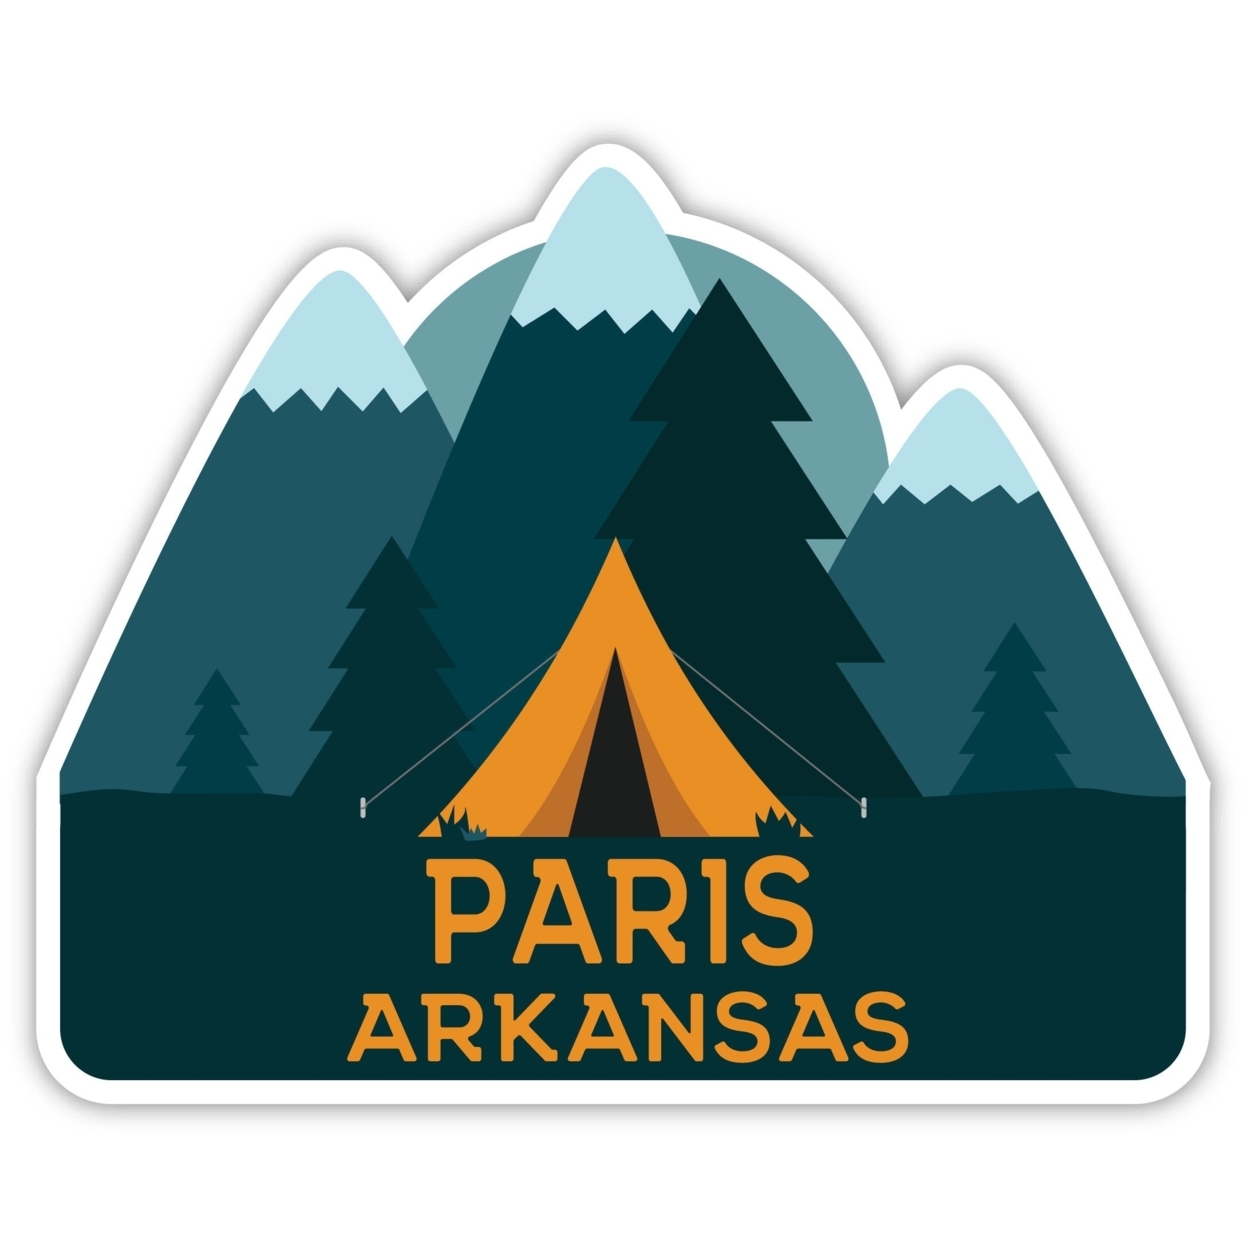 Paris Arkansas Souvenir Decorative Stickers (Choose Theme And Size) - Single Unit, 2-Inch, Tent